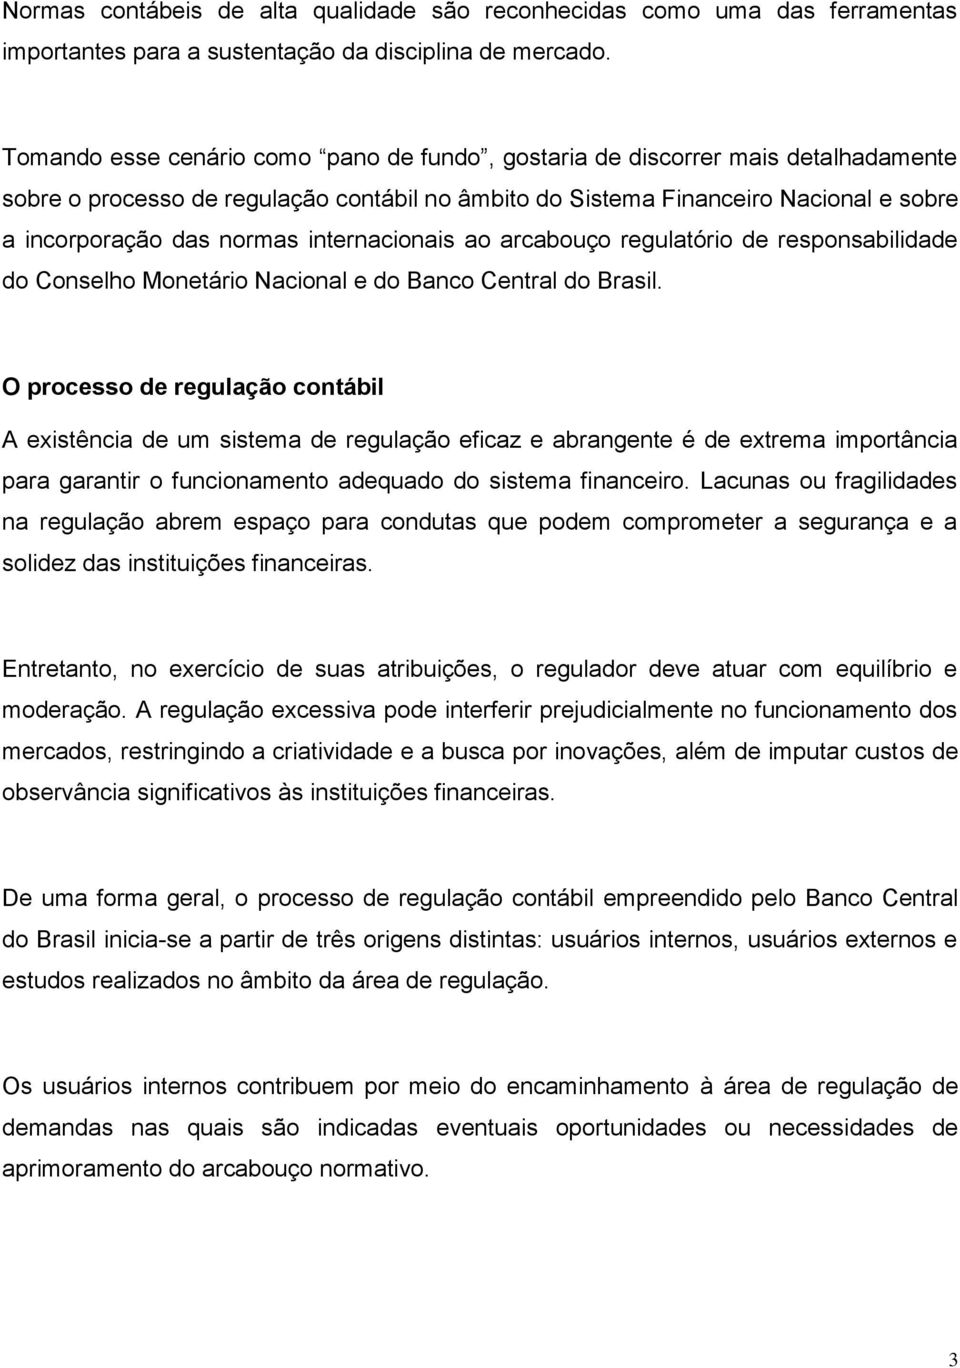 internacionais ao arcabouço regulatório de responsabilidade do Conselho Monetário Nacional e do Banco Central do Brasil.